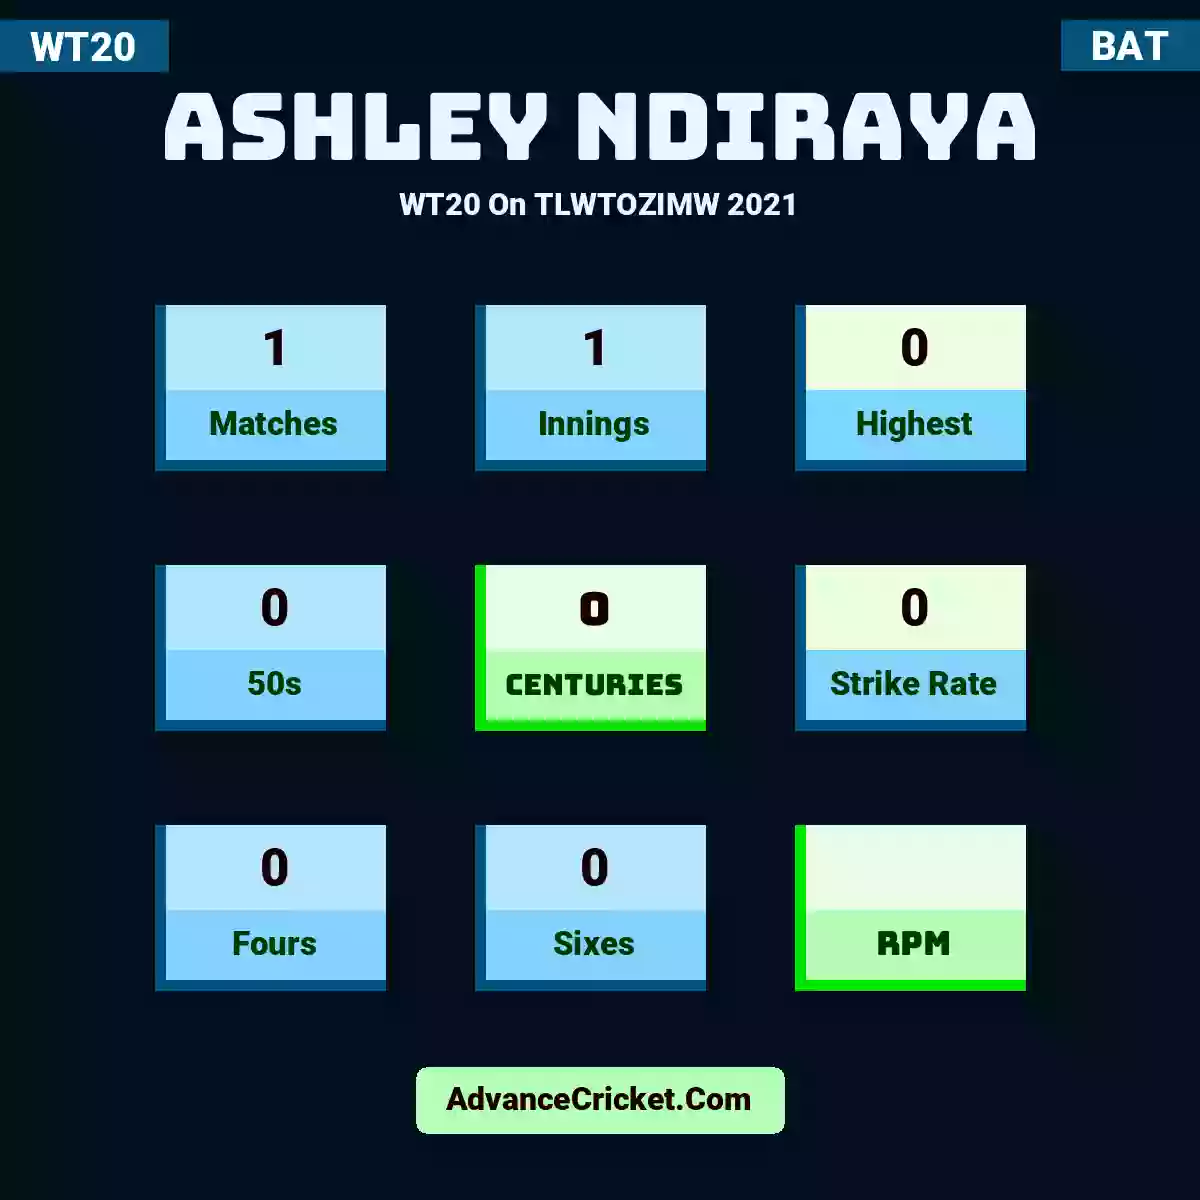 Ashley Ndiraya WT20  On TLWTOZIMW 2021, Ashley Ndiraya played 1 matches, scored 0 runs as highest, 0 half-centuries, and 0 centuries, with a strike rate of 0. A.Ndiraya hit 0 fours and 0 sixes.